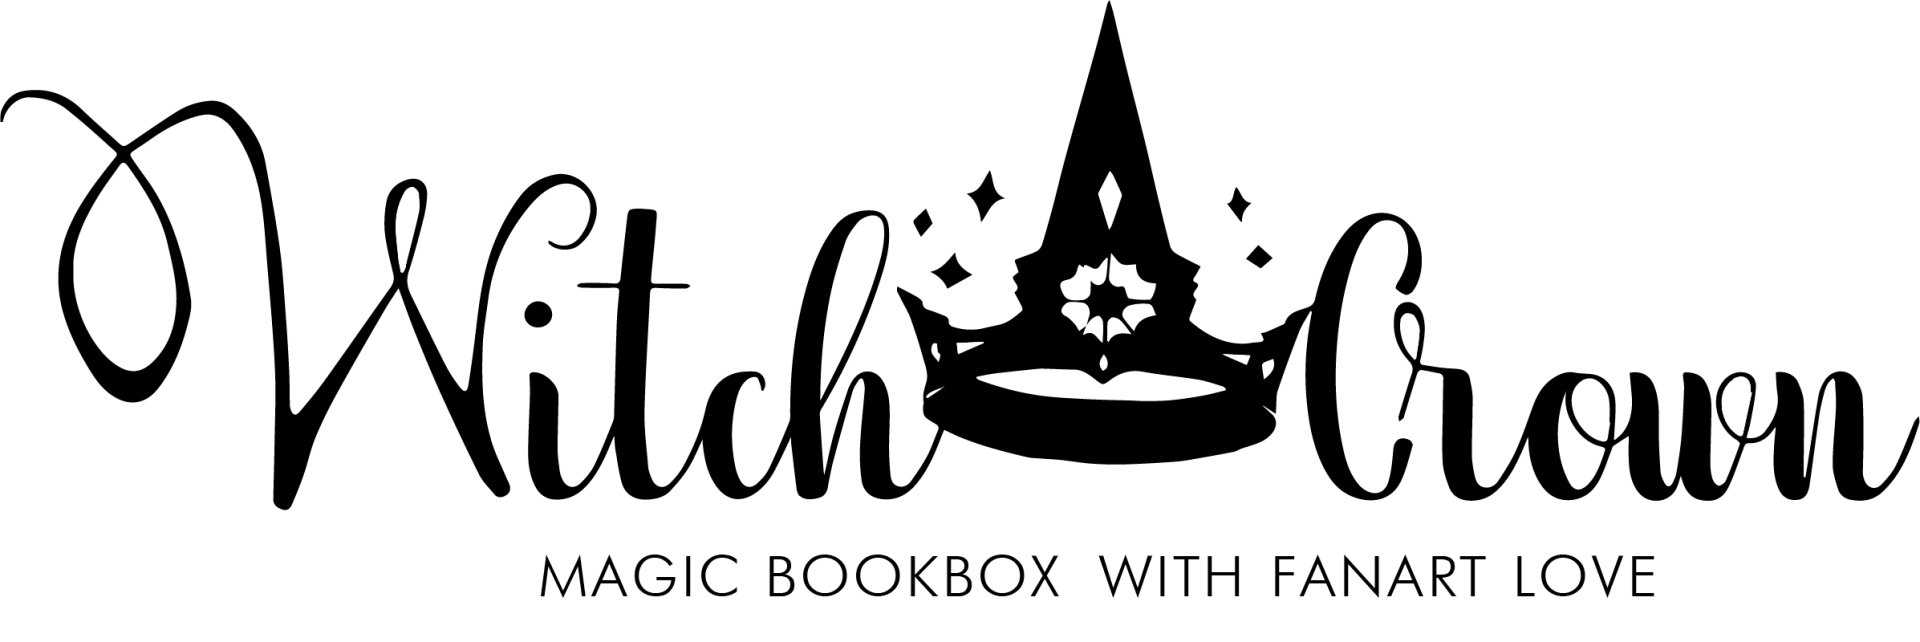 Witchcrown Buchbox